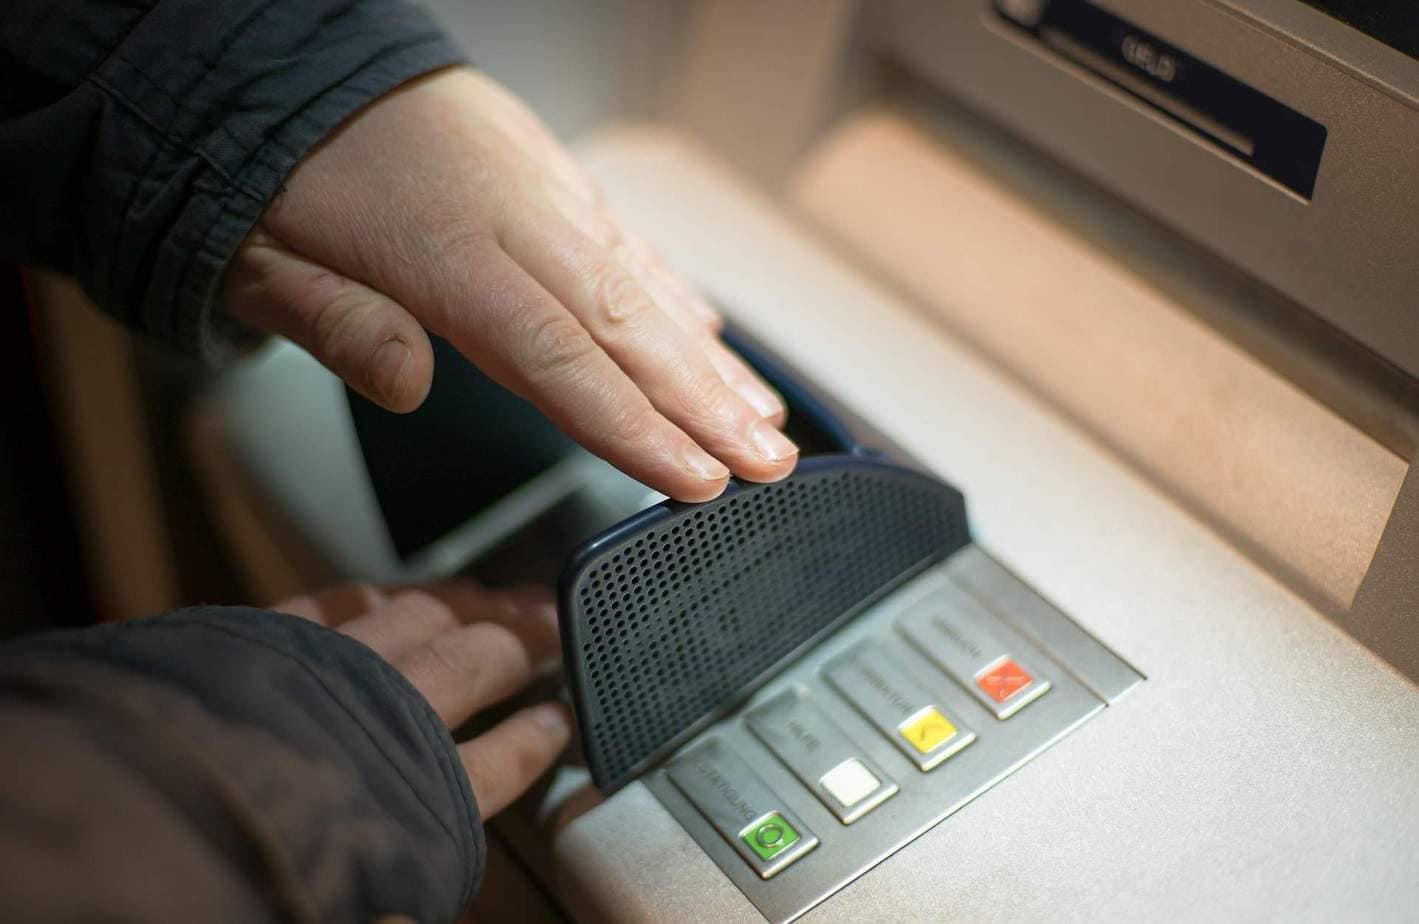 Cách mua thẻ cào card điện thoại, nạp tiền qua Vietcombank